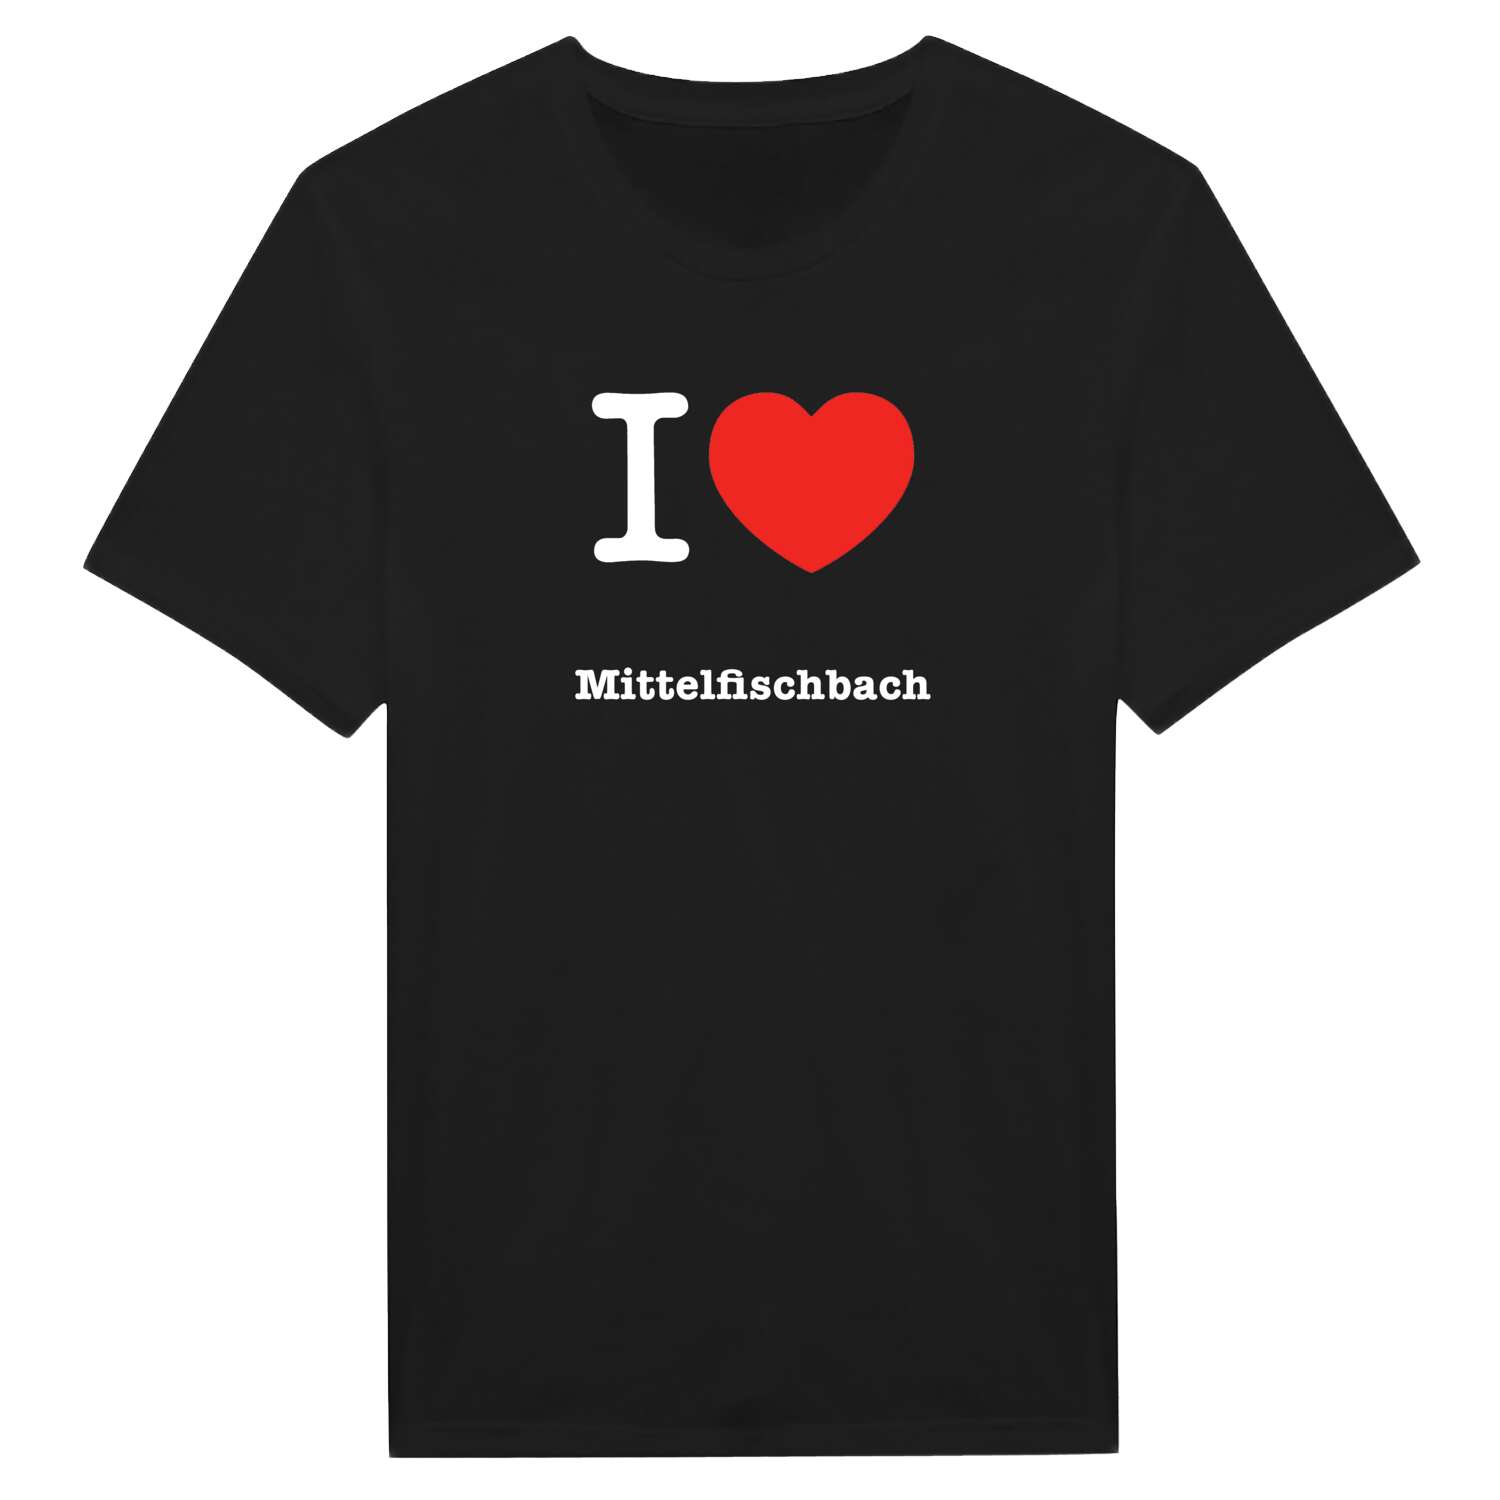 Mittelfischbach T-Shirt »I love«